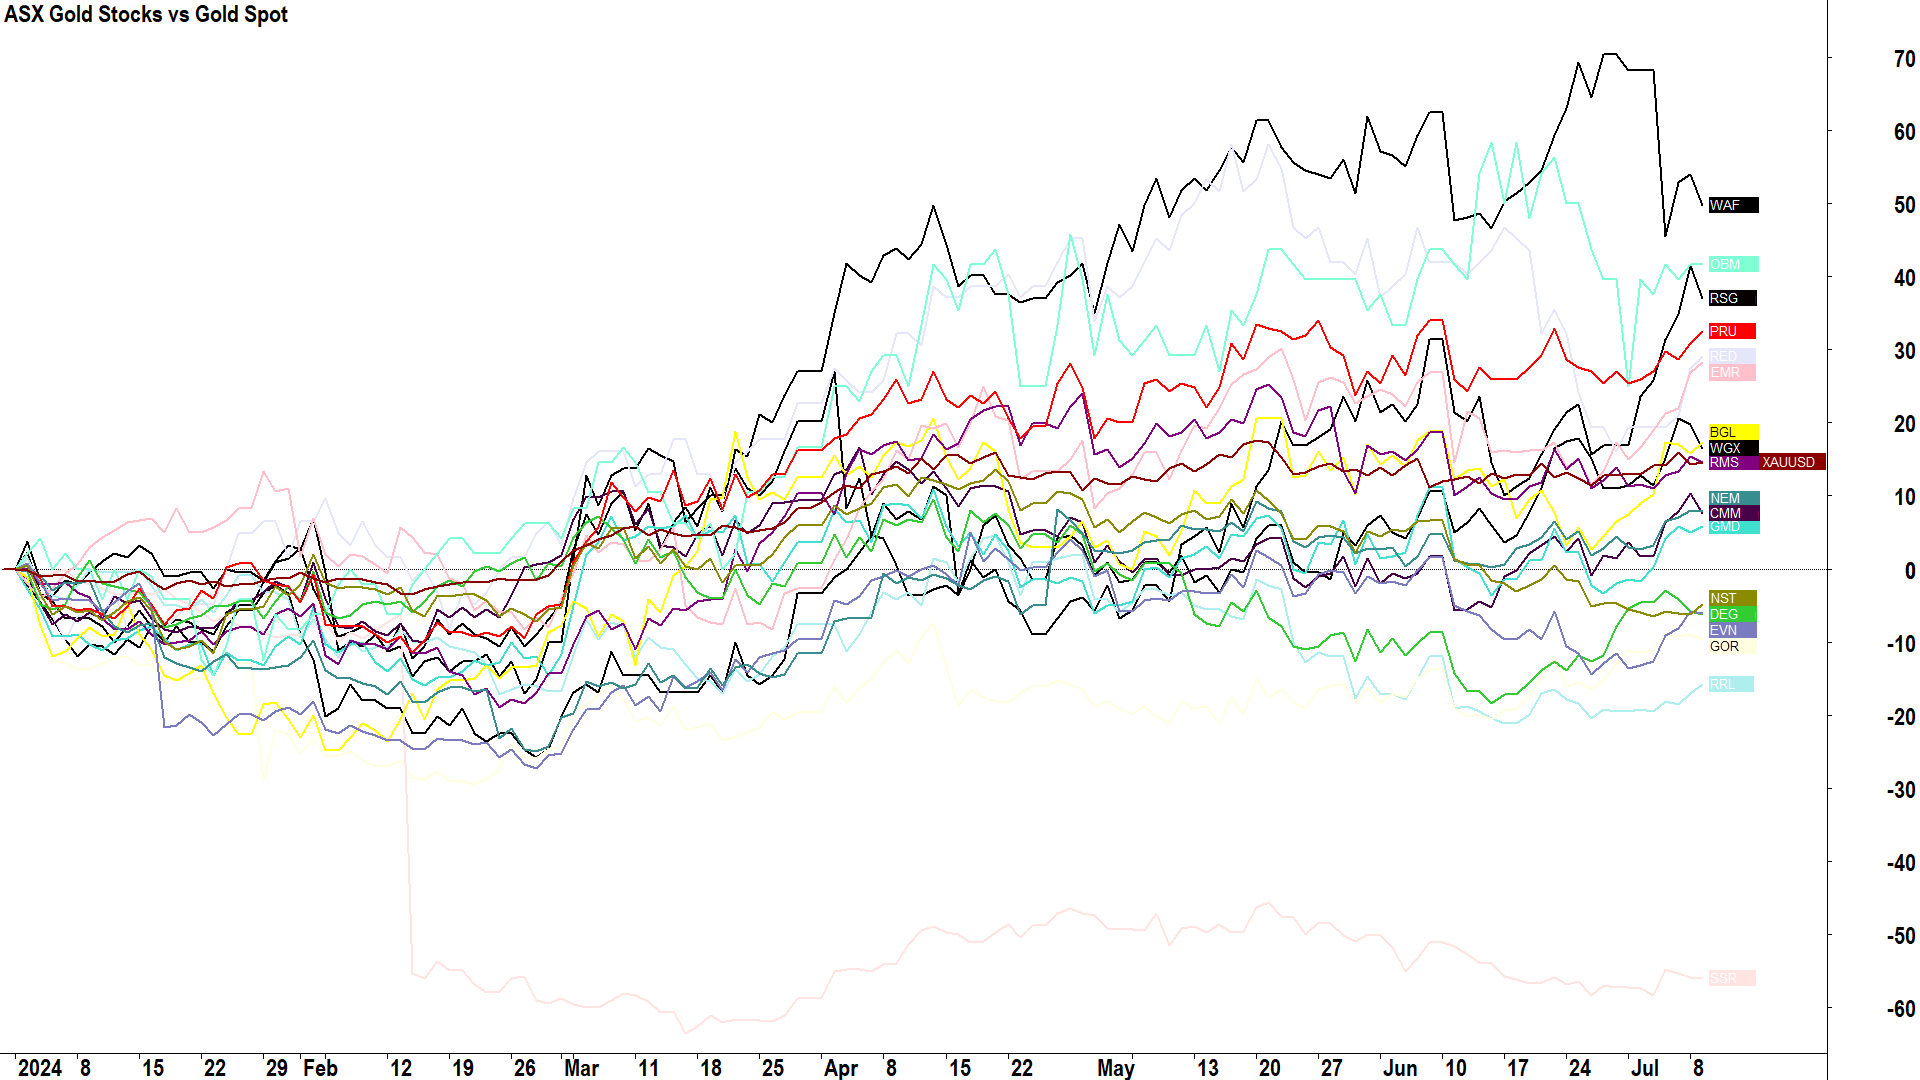 ASX Gold Stocks vs Gold Price Performance in 2024